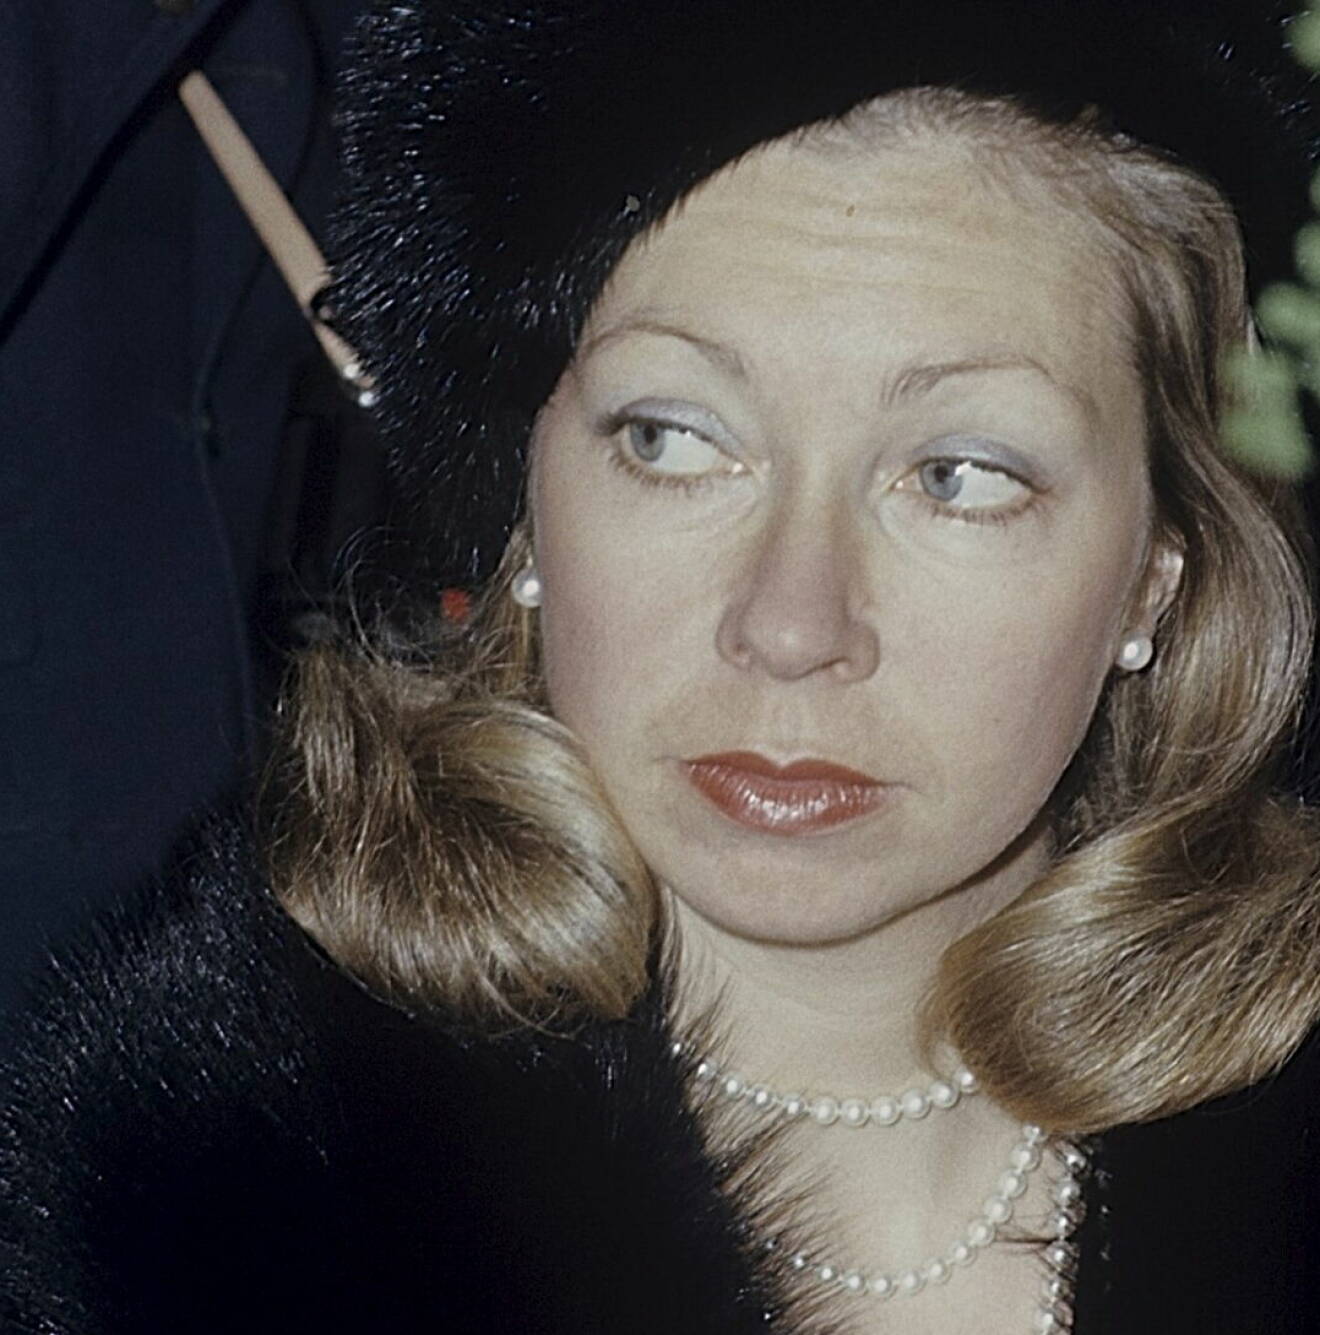 Prinsessan Christina i pärlor och päls år 1973